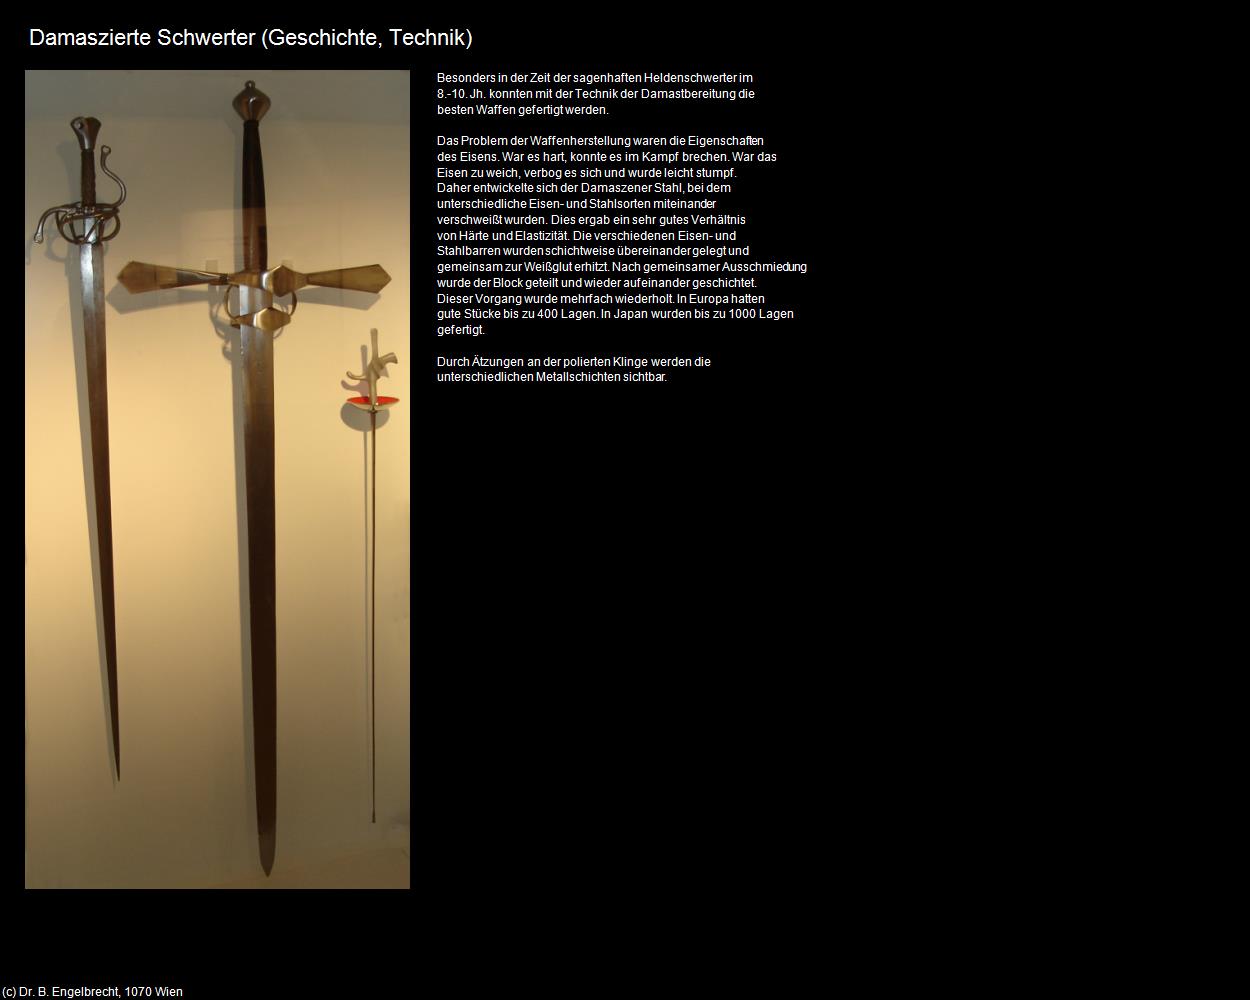 Damaszierte Schwerter (Ybbsitz) in Kulturatlas-NIEDERÖSTERREICH